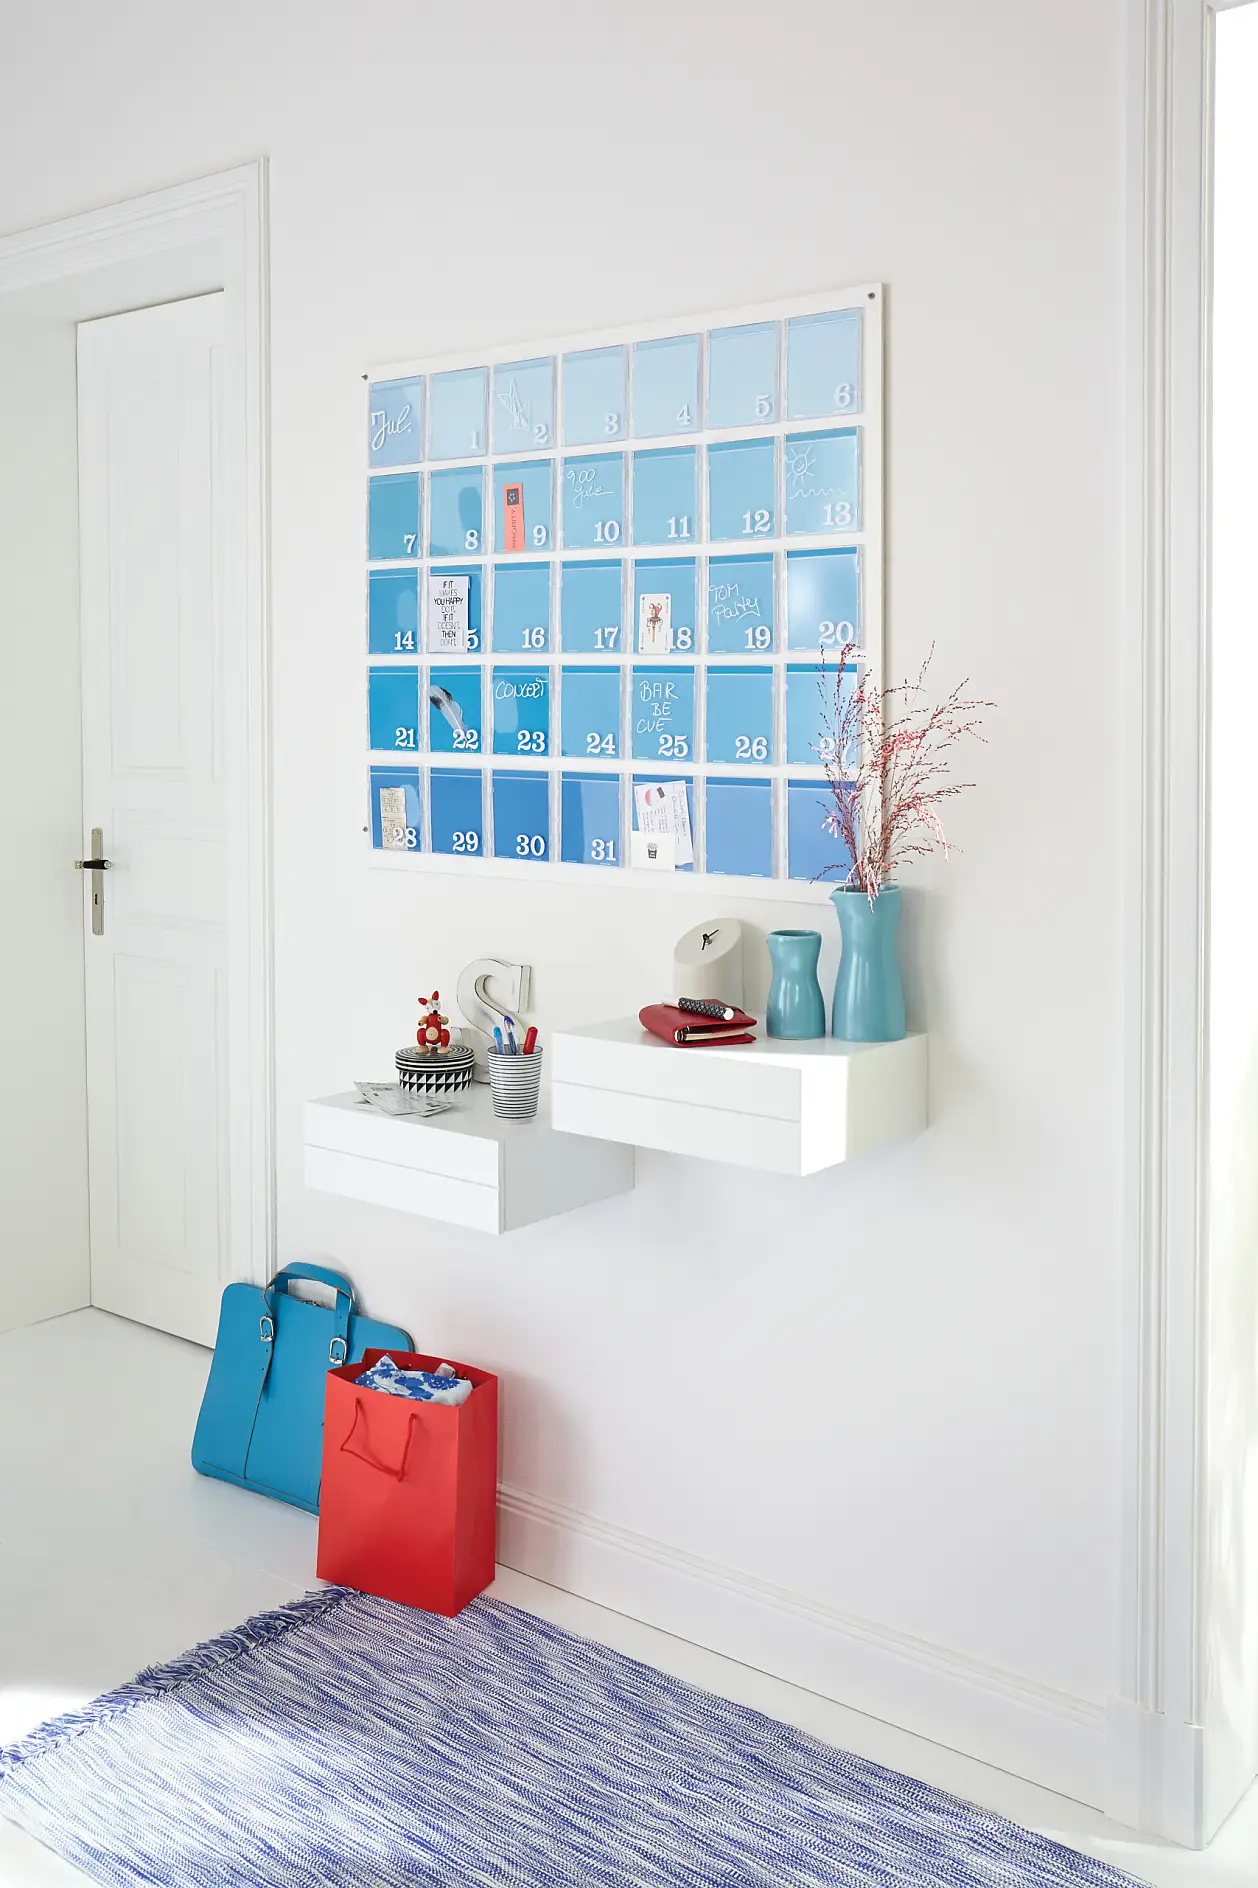 God fornøjelse med den nye, blå, hjemmelavede vægkalender, som hænger i din entré!